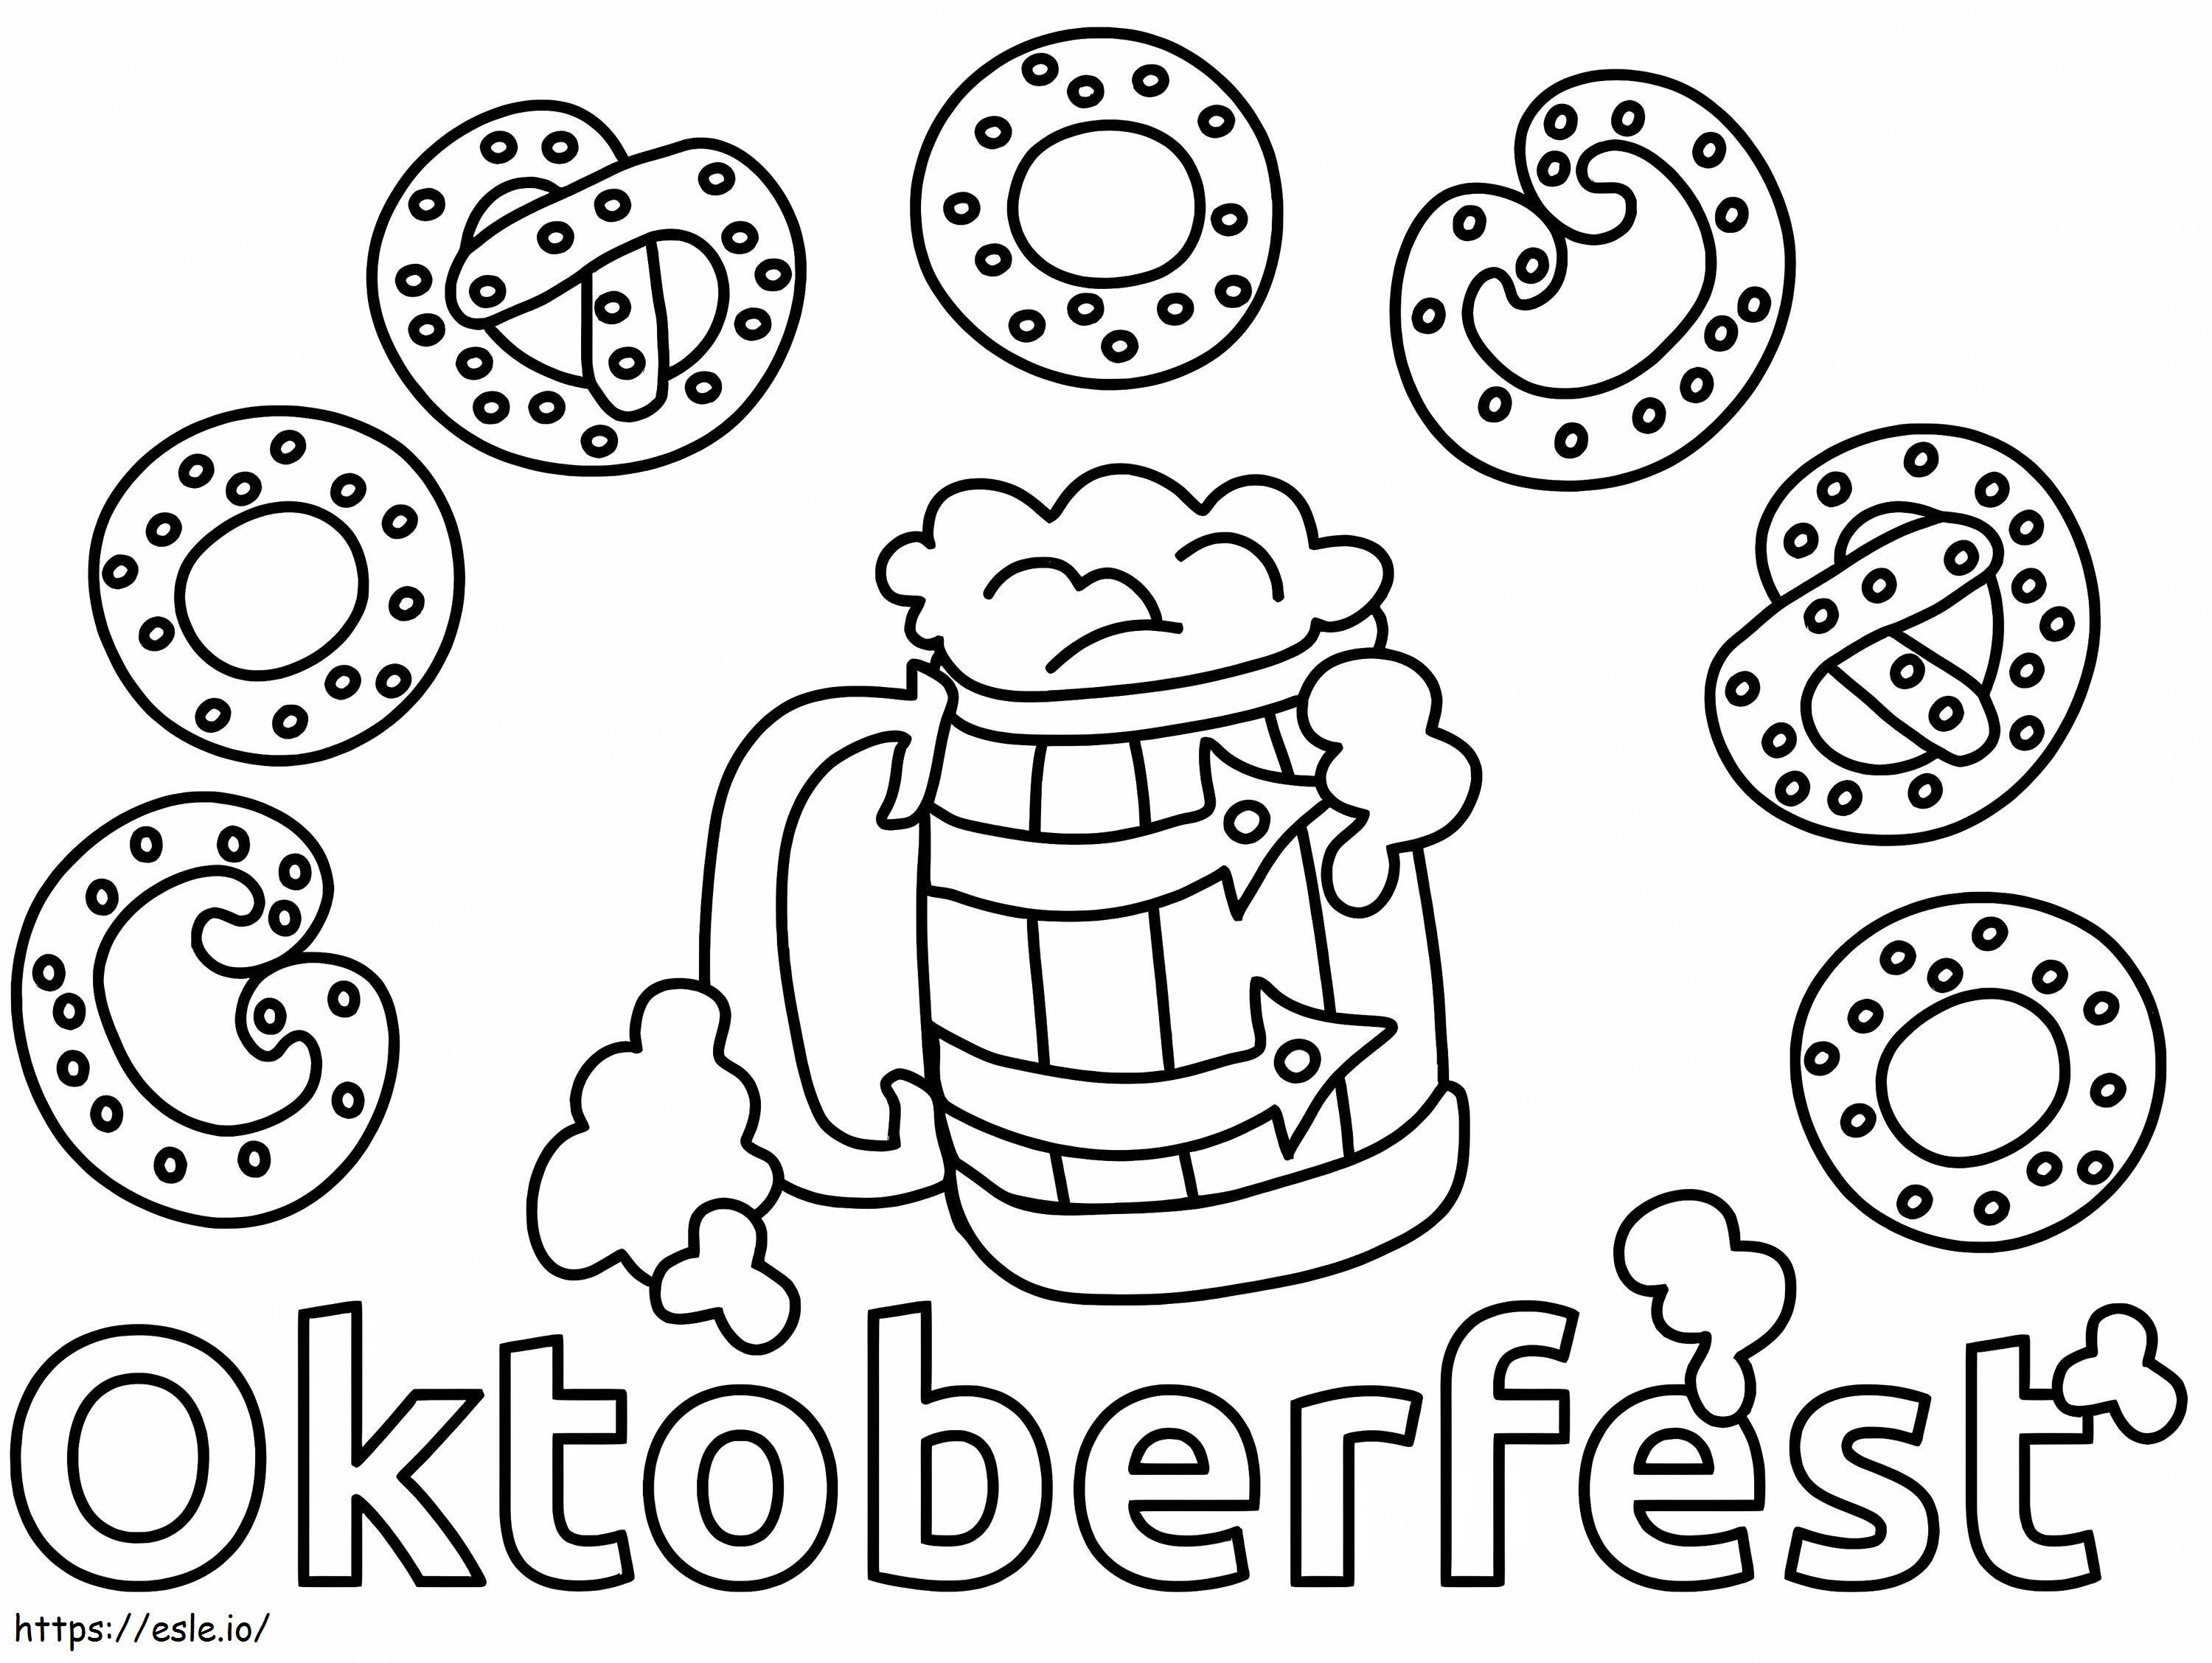 Estandarte da Oktoberfest para colorir